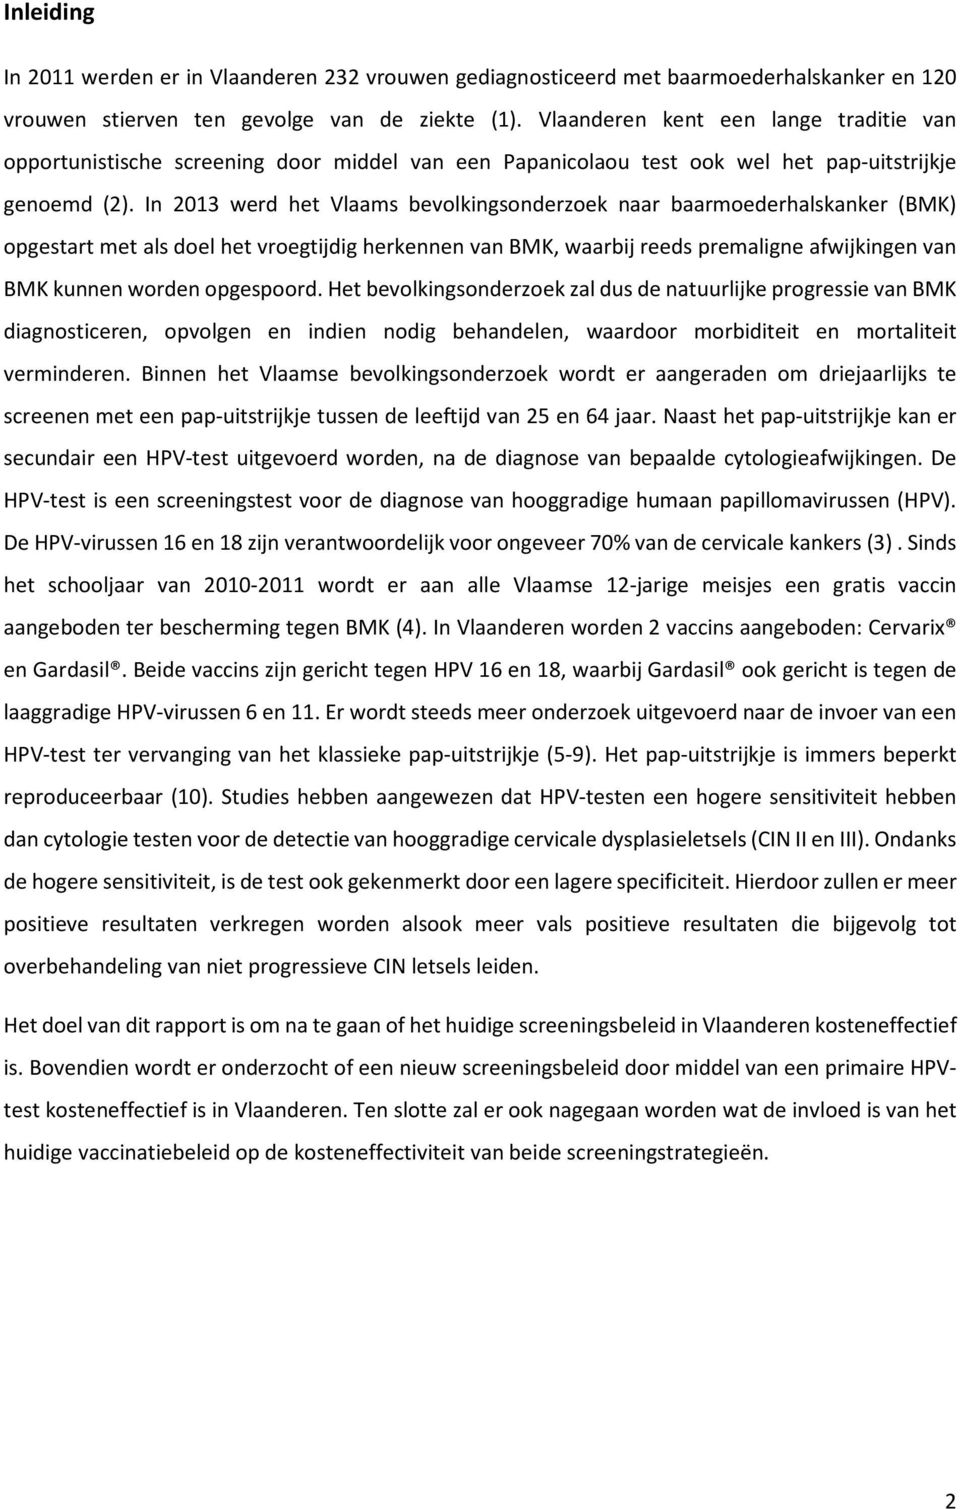 In 2013 werd het Vlaams bevolkingsonderzoek naar baarmoederhalskanker (BMK) opgestart met als doel het vroegtijdig herkennen van BMK, waarbij reeds premaligne afwijkingen van BMK kunnen worden